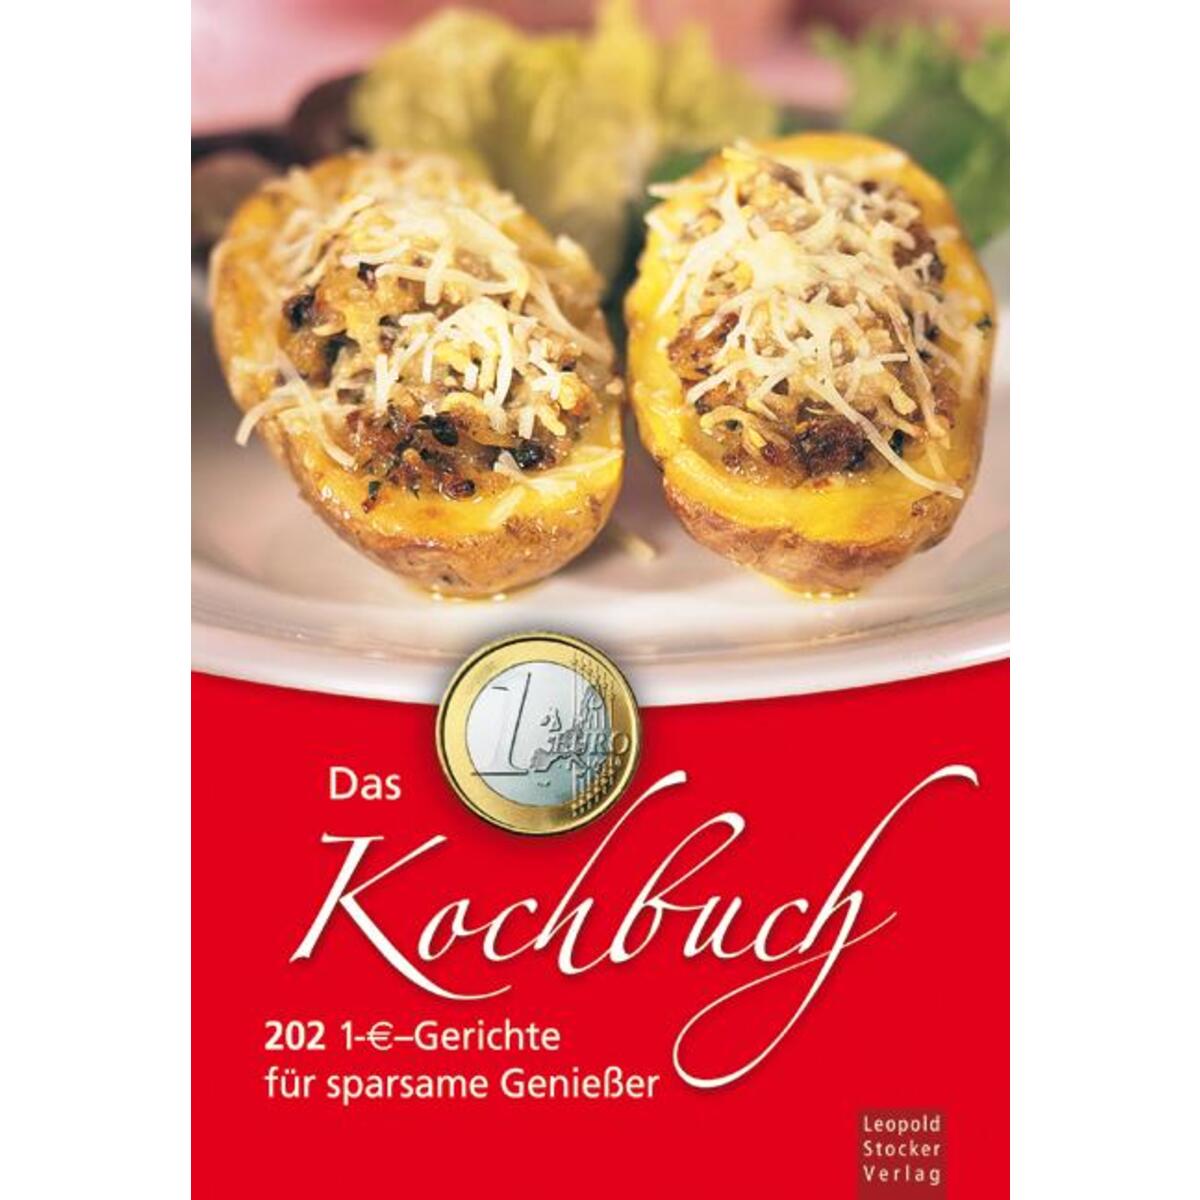 Das 1-Euro-Kochbuch von Stocker Leopold Verlag